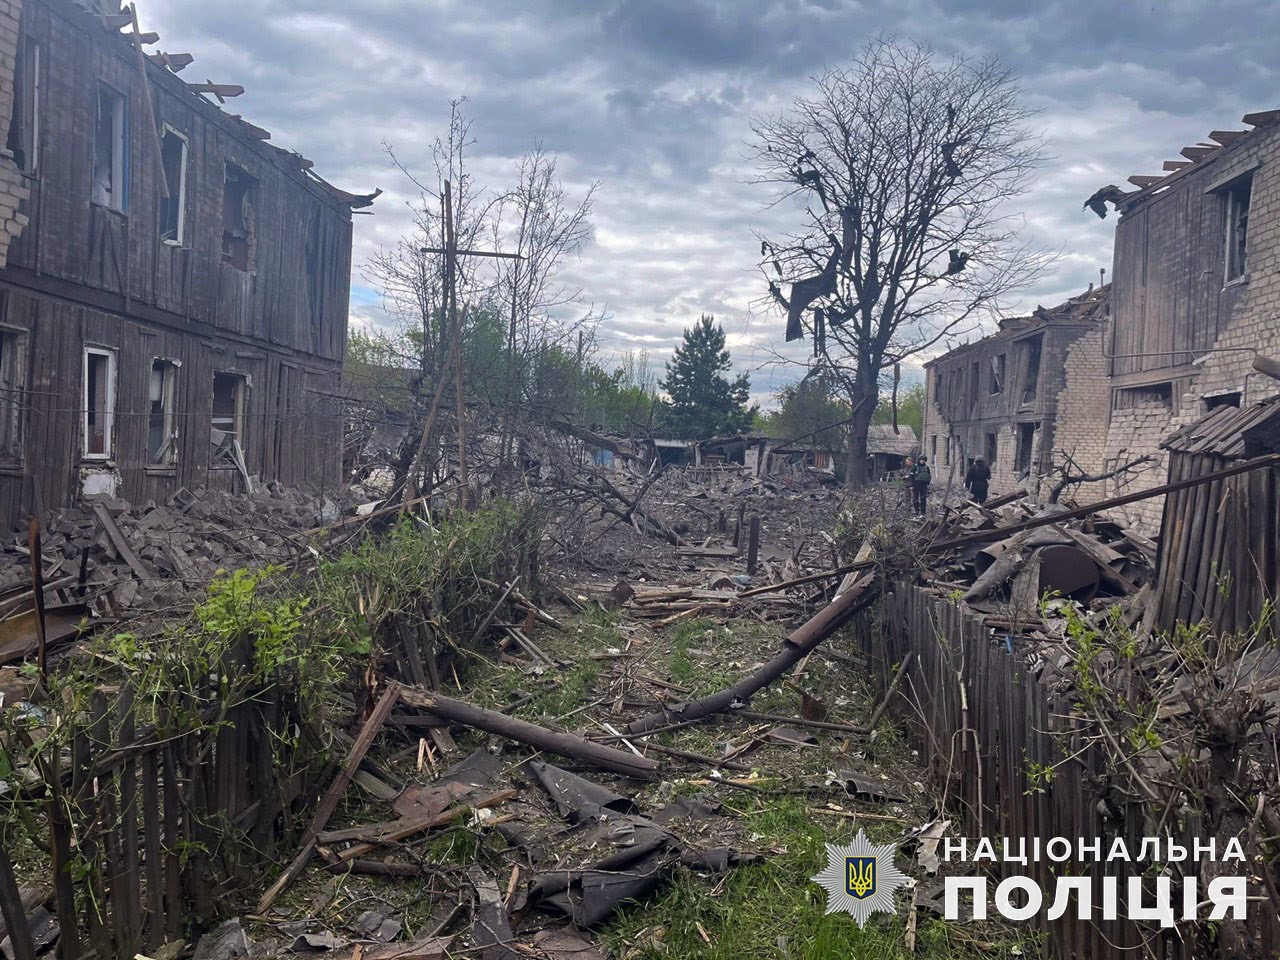 13 раненых и одна погибшая за день: последствия российских обстрелов в Донецкой области (ФОТО, СВОДКА) 1